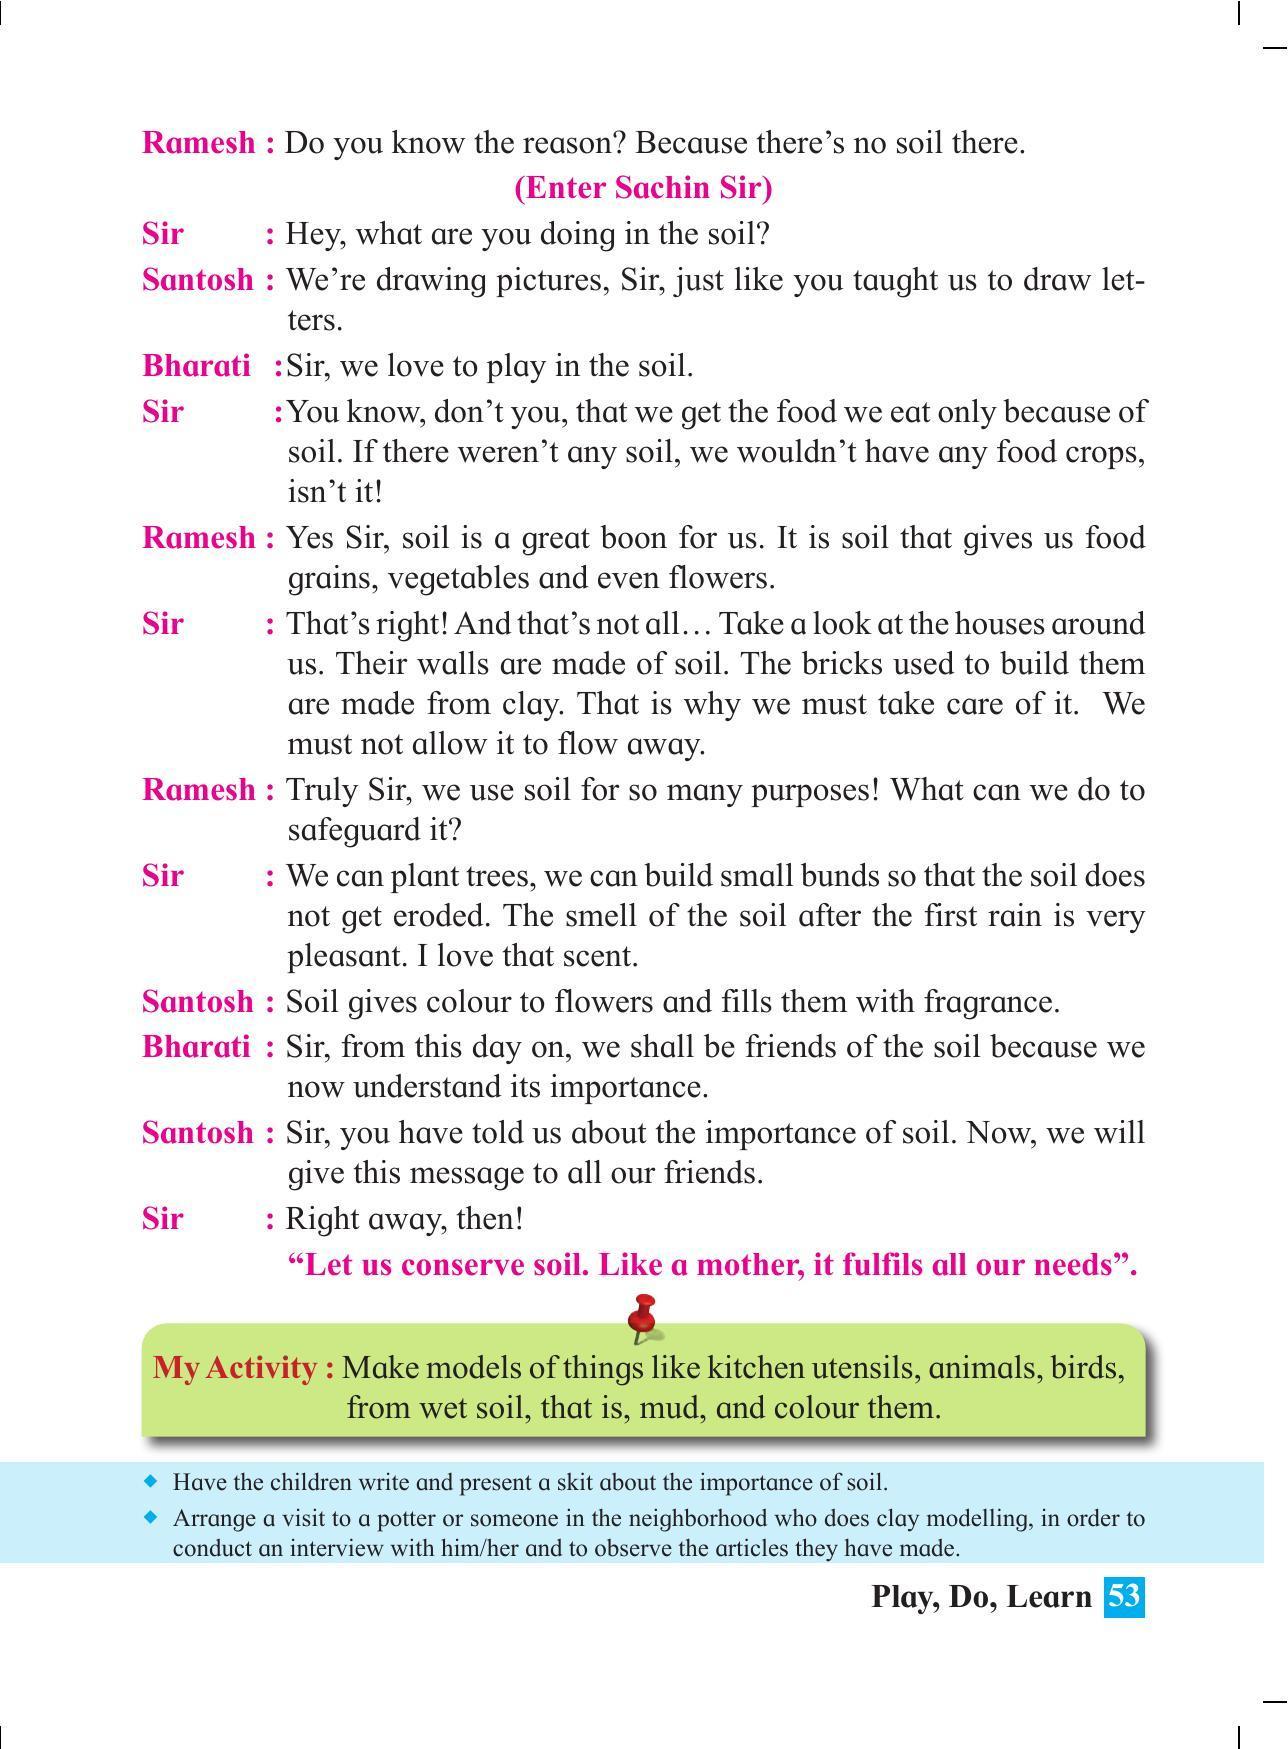 Maharashtra Board Class 4 Play Do Learn (English Medium) Textbook - Page 62